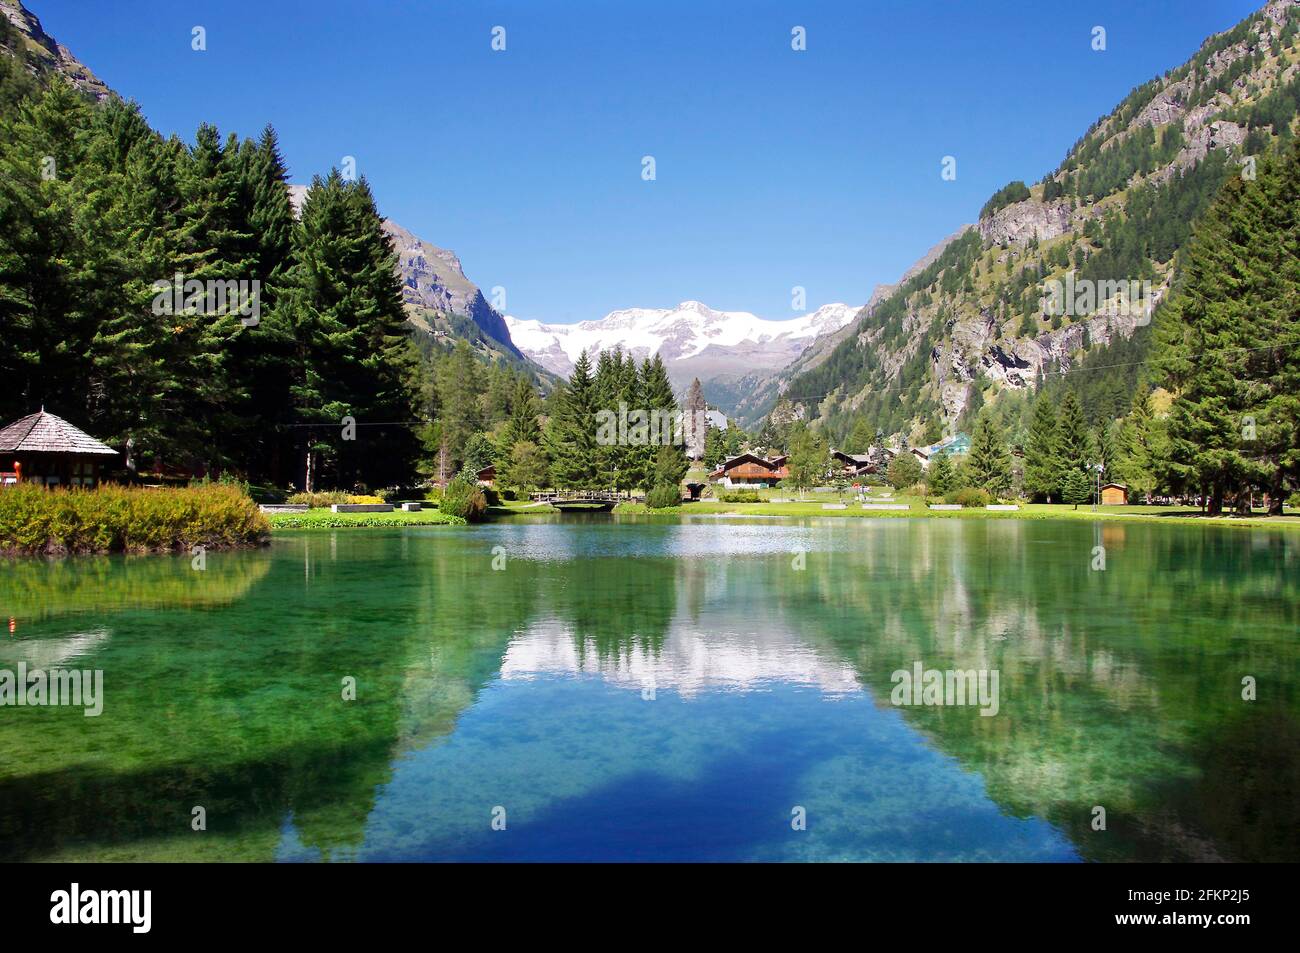 Panoramablick auf den Gover See zwischen den Bergen des Aostatals, Gressoney-Saint-Jean, Aostatal, Italien Stockfoto